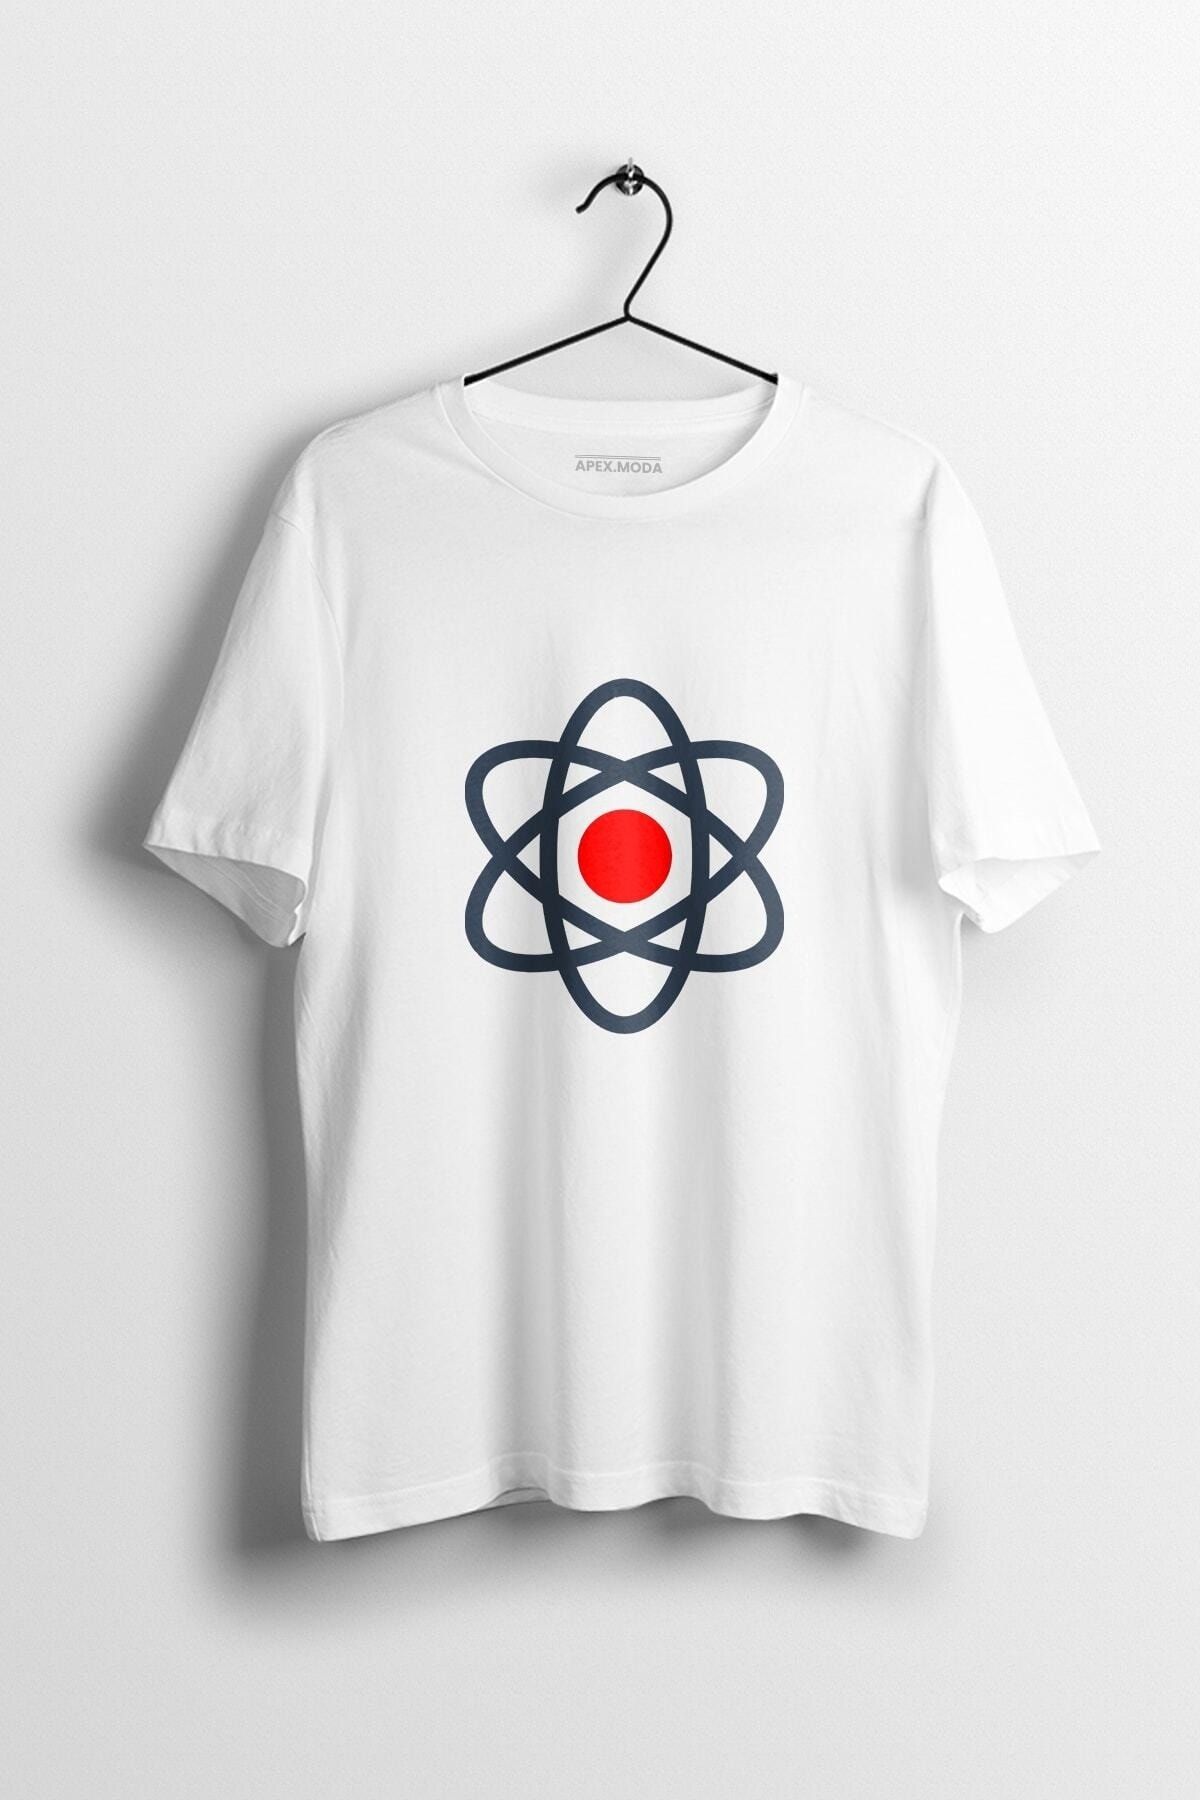 WePOD Atom Baskılı Tişört Baskılı Beyaz Kısa Kollu Unisex Tişört